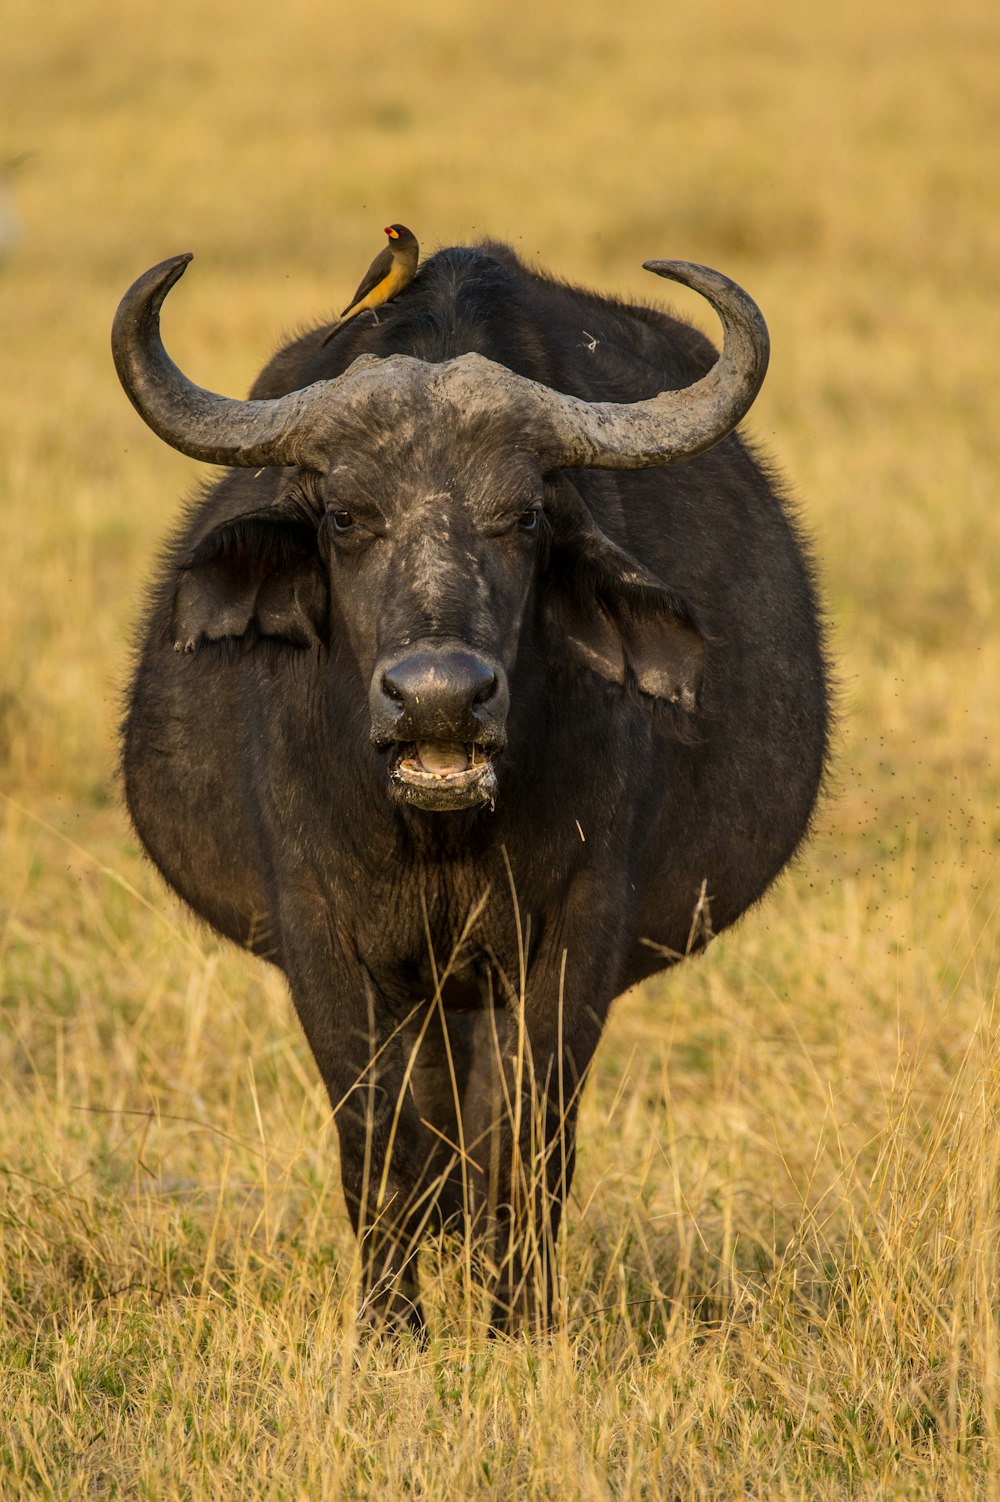 black water buffalo on brown grass field daytime photo – Free Botswana Image on Unsplash